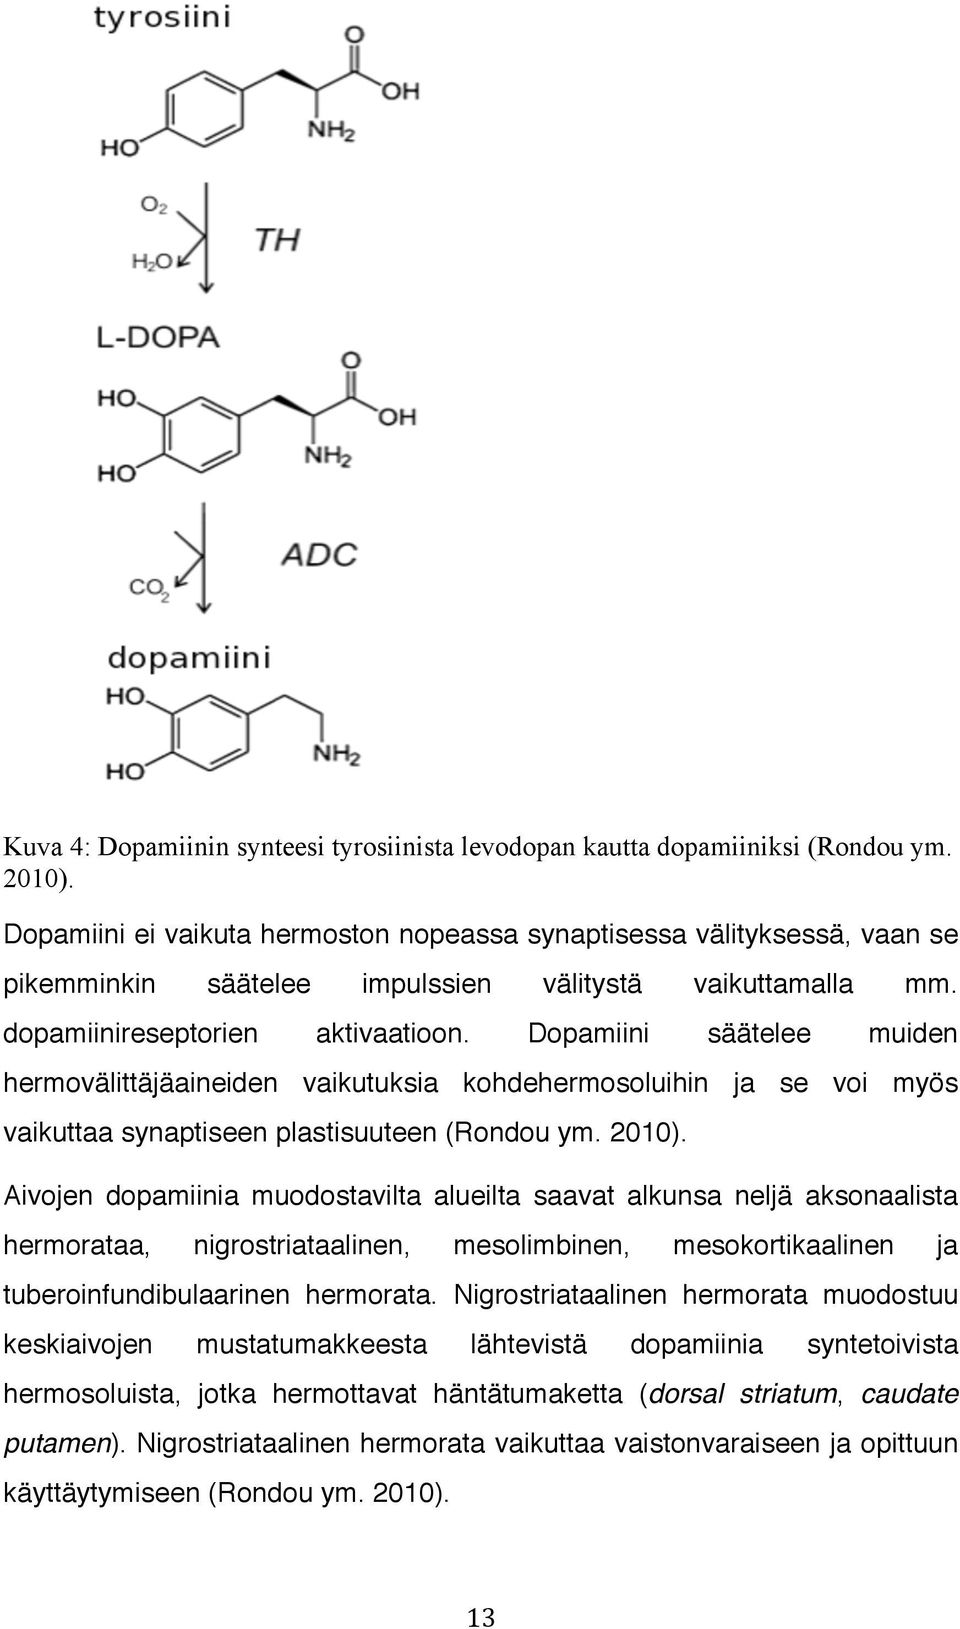 Dopamiini säätelee muiden hermovälittäjäaineiden vaikutuksia kohdehermosoluihin ja se voi myös vaikuttaa synaptiseen plastisuuteen (Rondou ym. 2010).